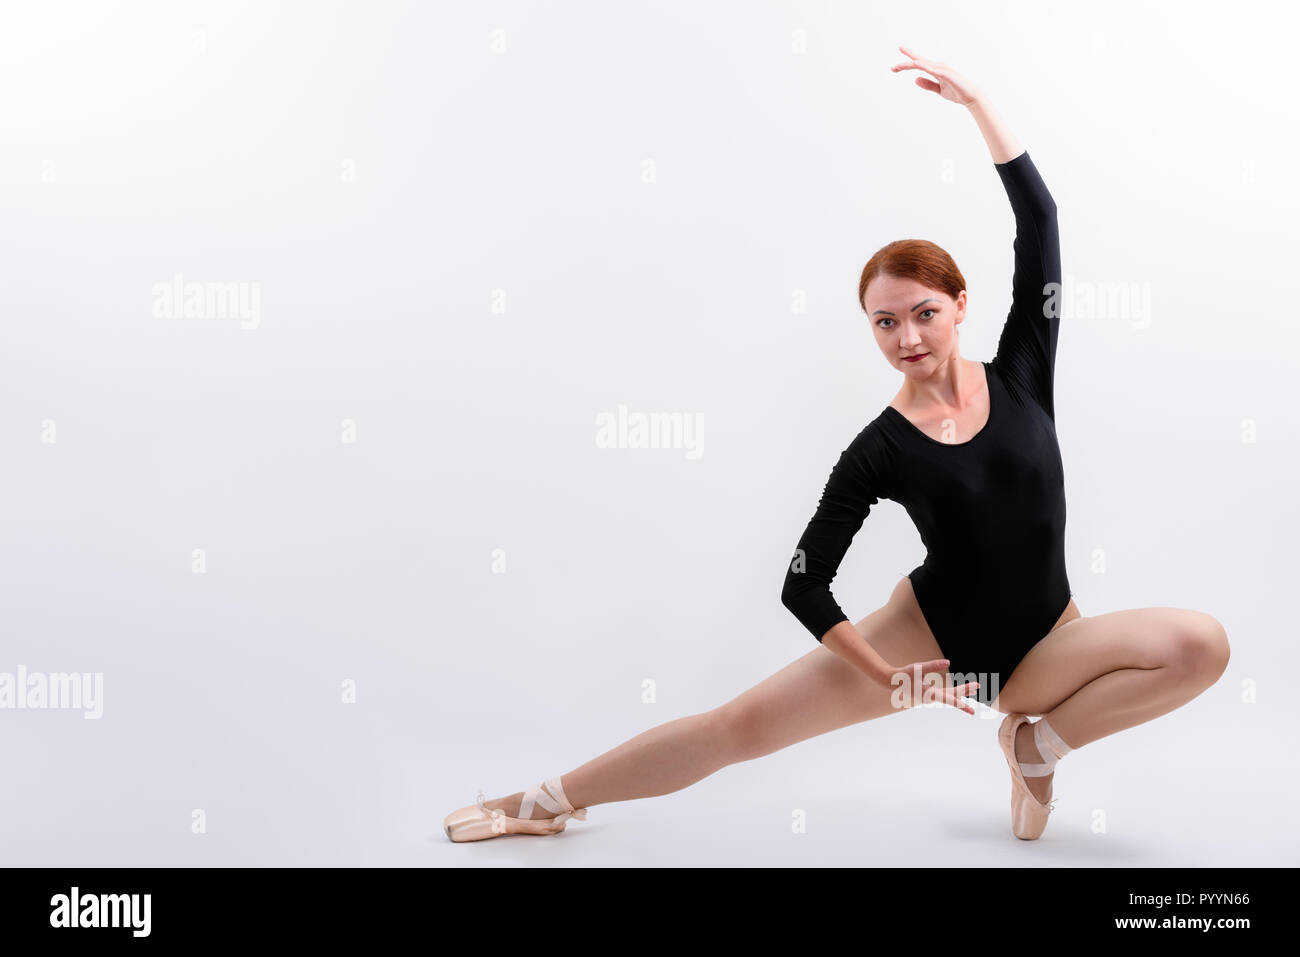 Full body shot of woman ballet dancer posing down on the floor Stock Photo